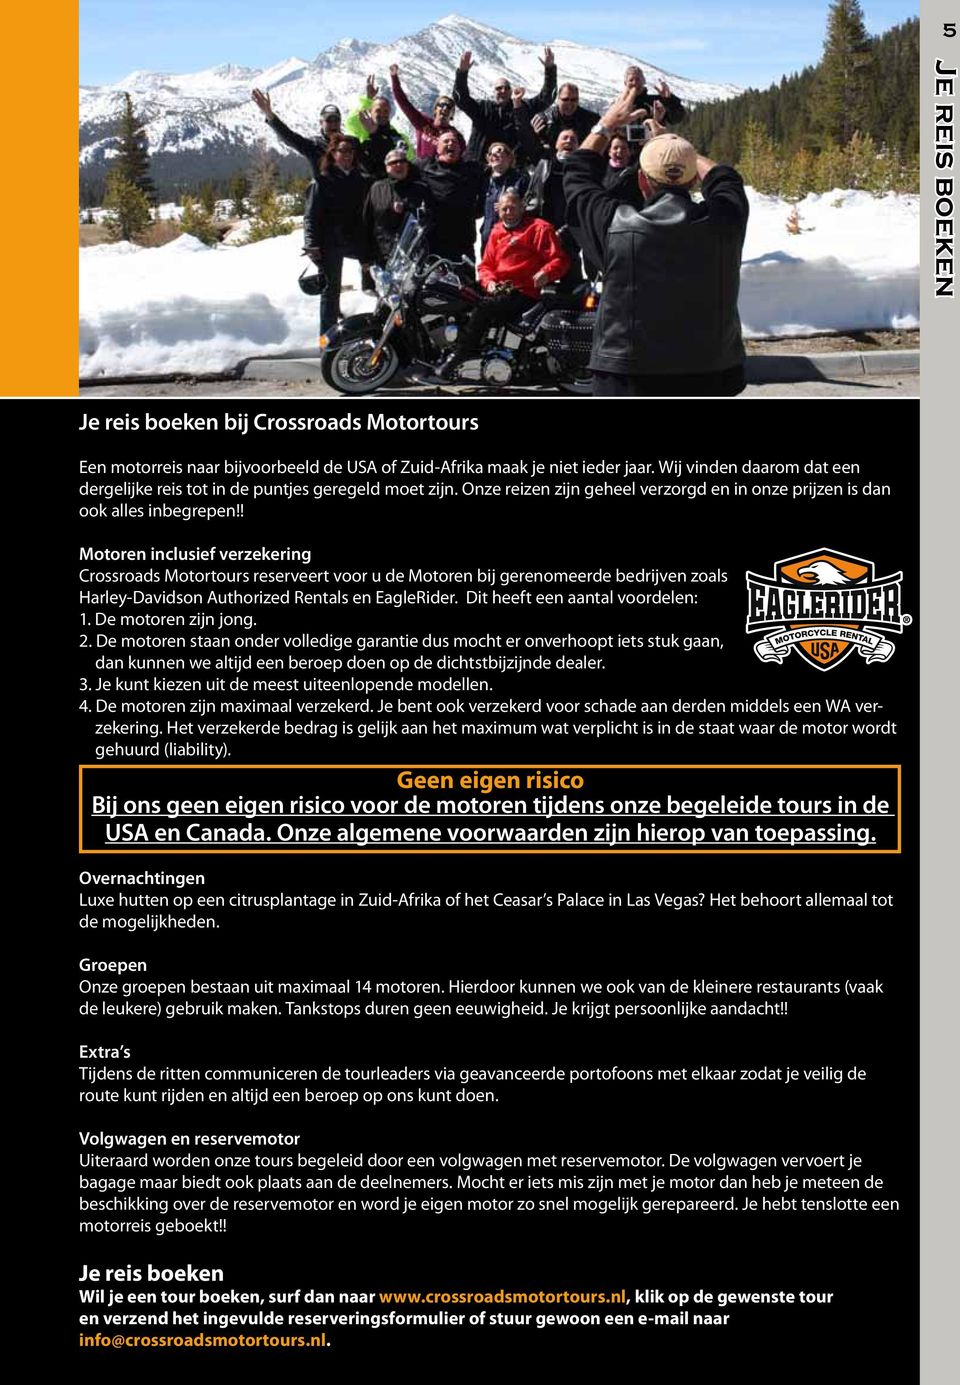 ! Motoren inclusief verzekering Crossroads Motortours reserveert voor u de Motoren bij gerenomeerde bedrijven zoals Harley-Davidson Authorized Rentals en EagleRider. Dit heeft een aantal voordelen: 1.